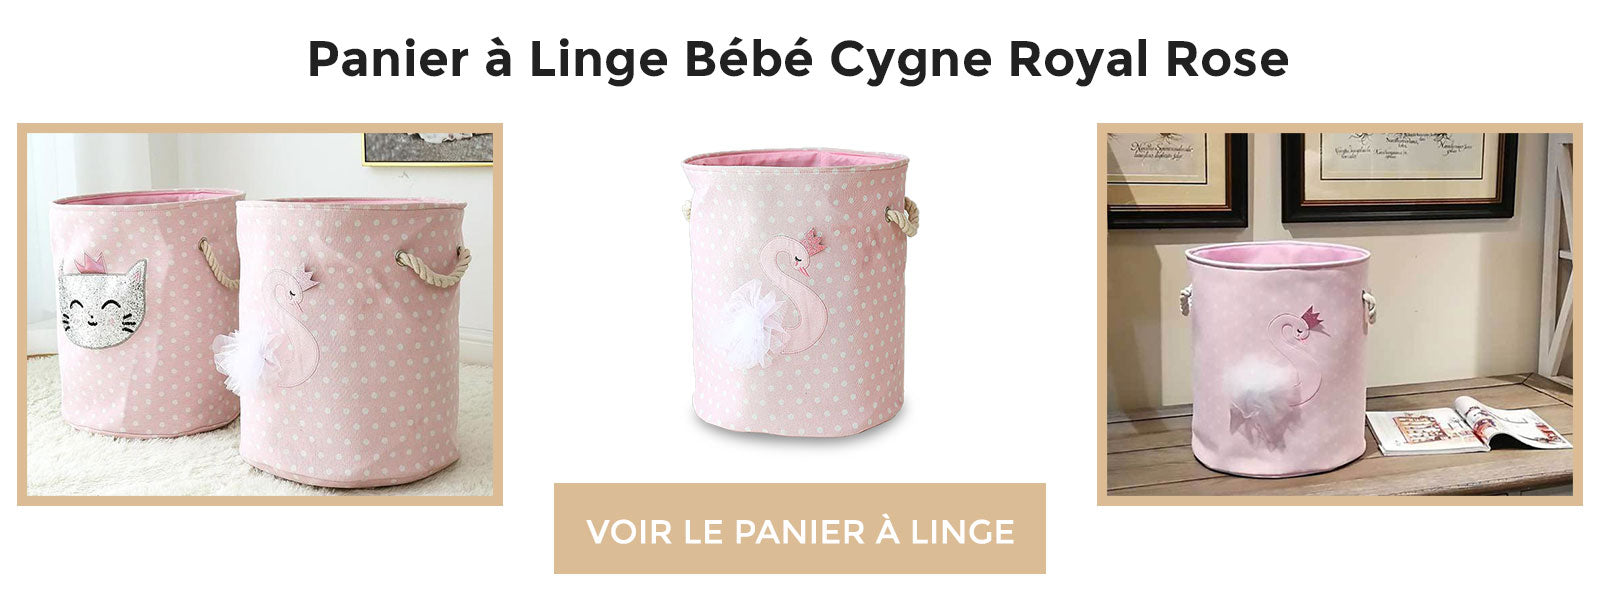 bannière Panier à Linge Bébé Cygne Royale Rose